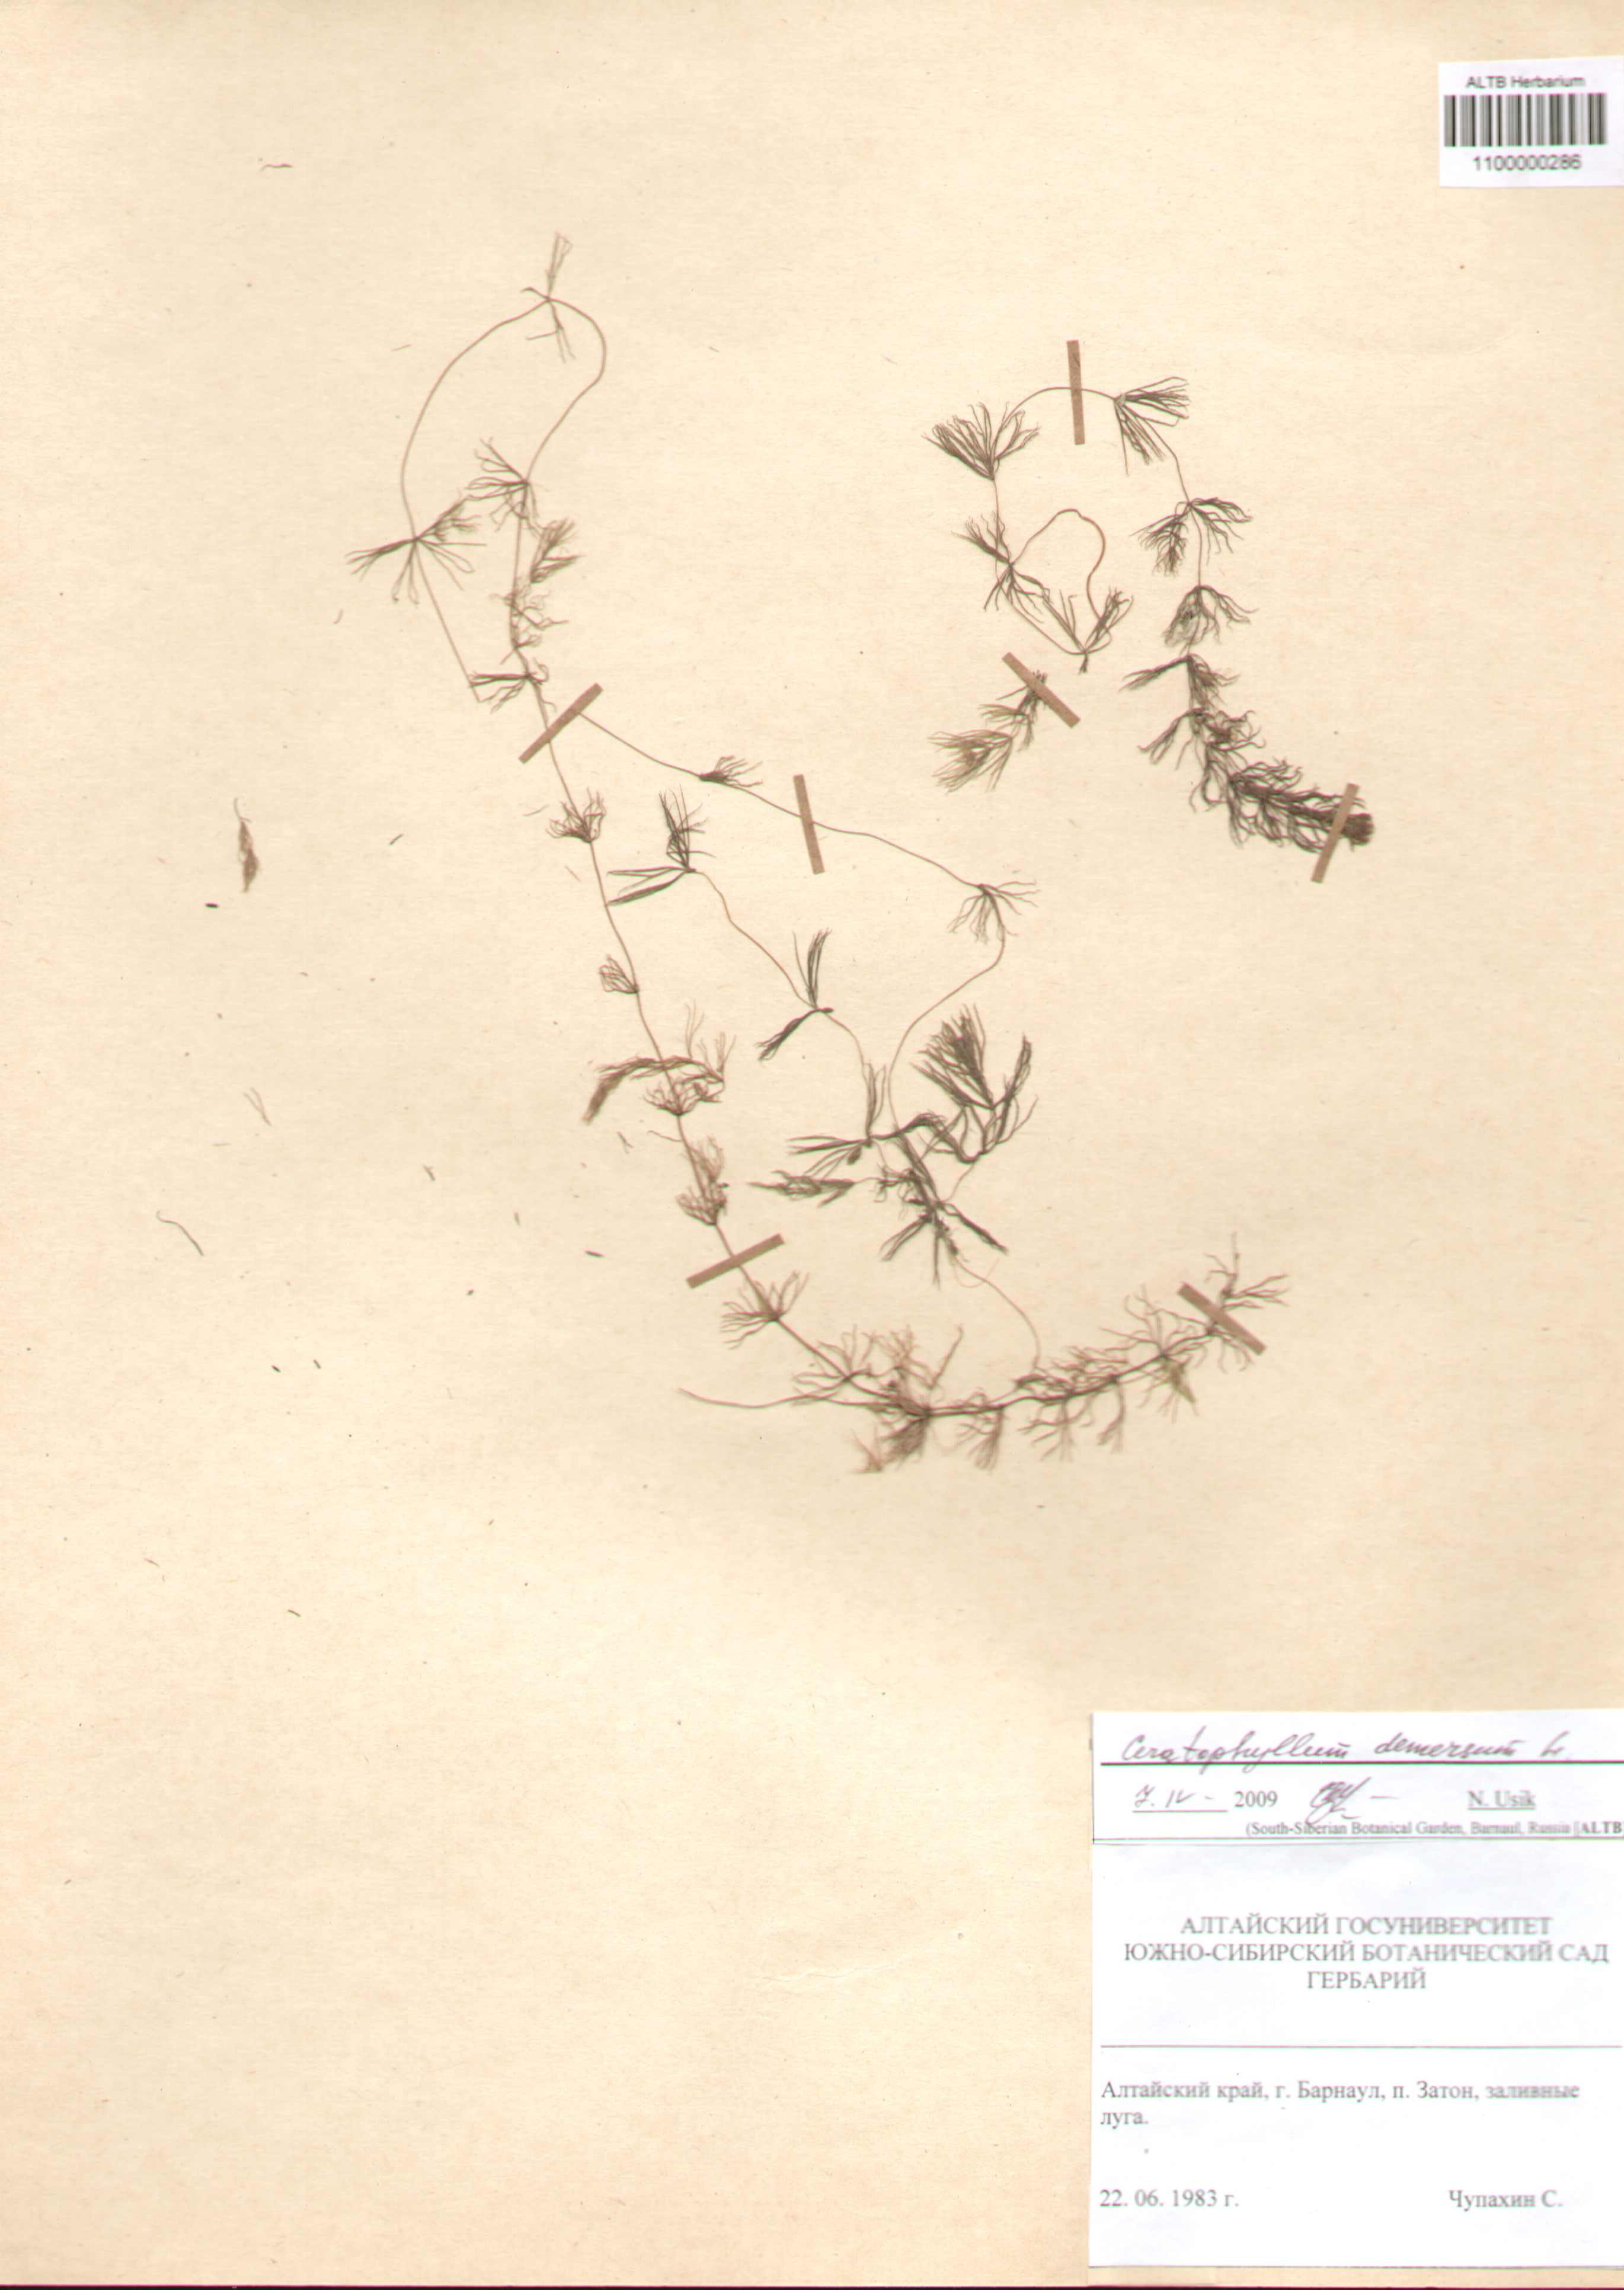 Ceratophyllaceae,Ceratophyllum demersum L.